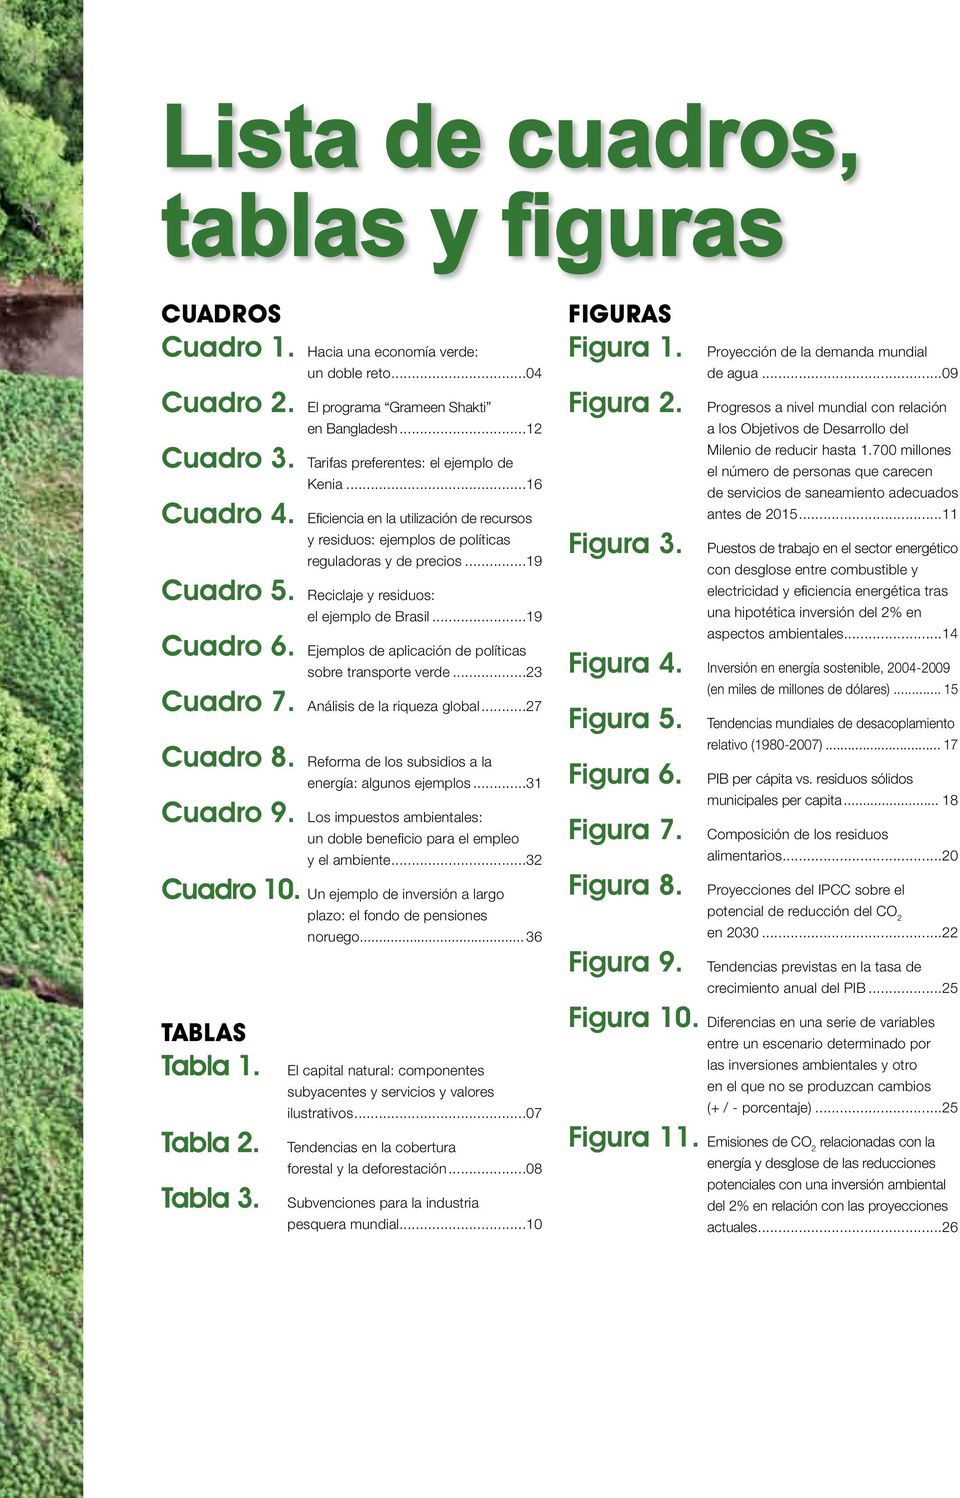 Reciclaje y residuos: el ejemplo de Brasil...19 Cuadro 6. Ejemplos de aplicación de políticas sobre transporte verde...23 Cuadro 7. Análisis de la riqueza global...27 Cuadro 8.